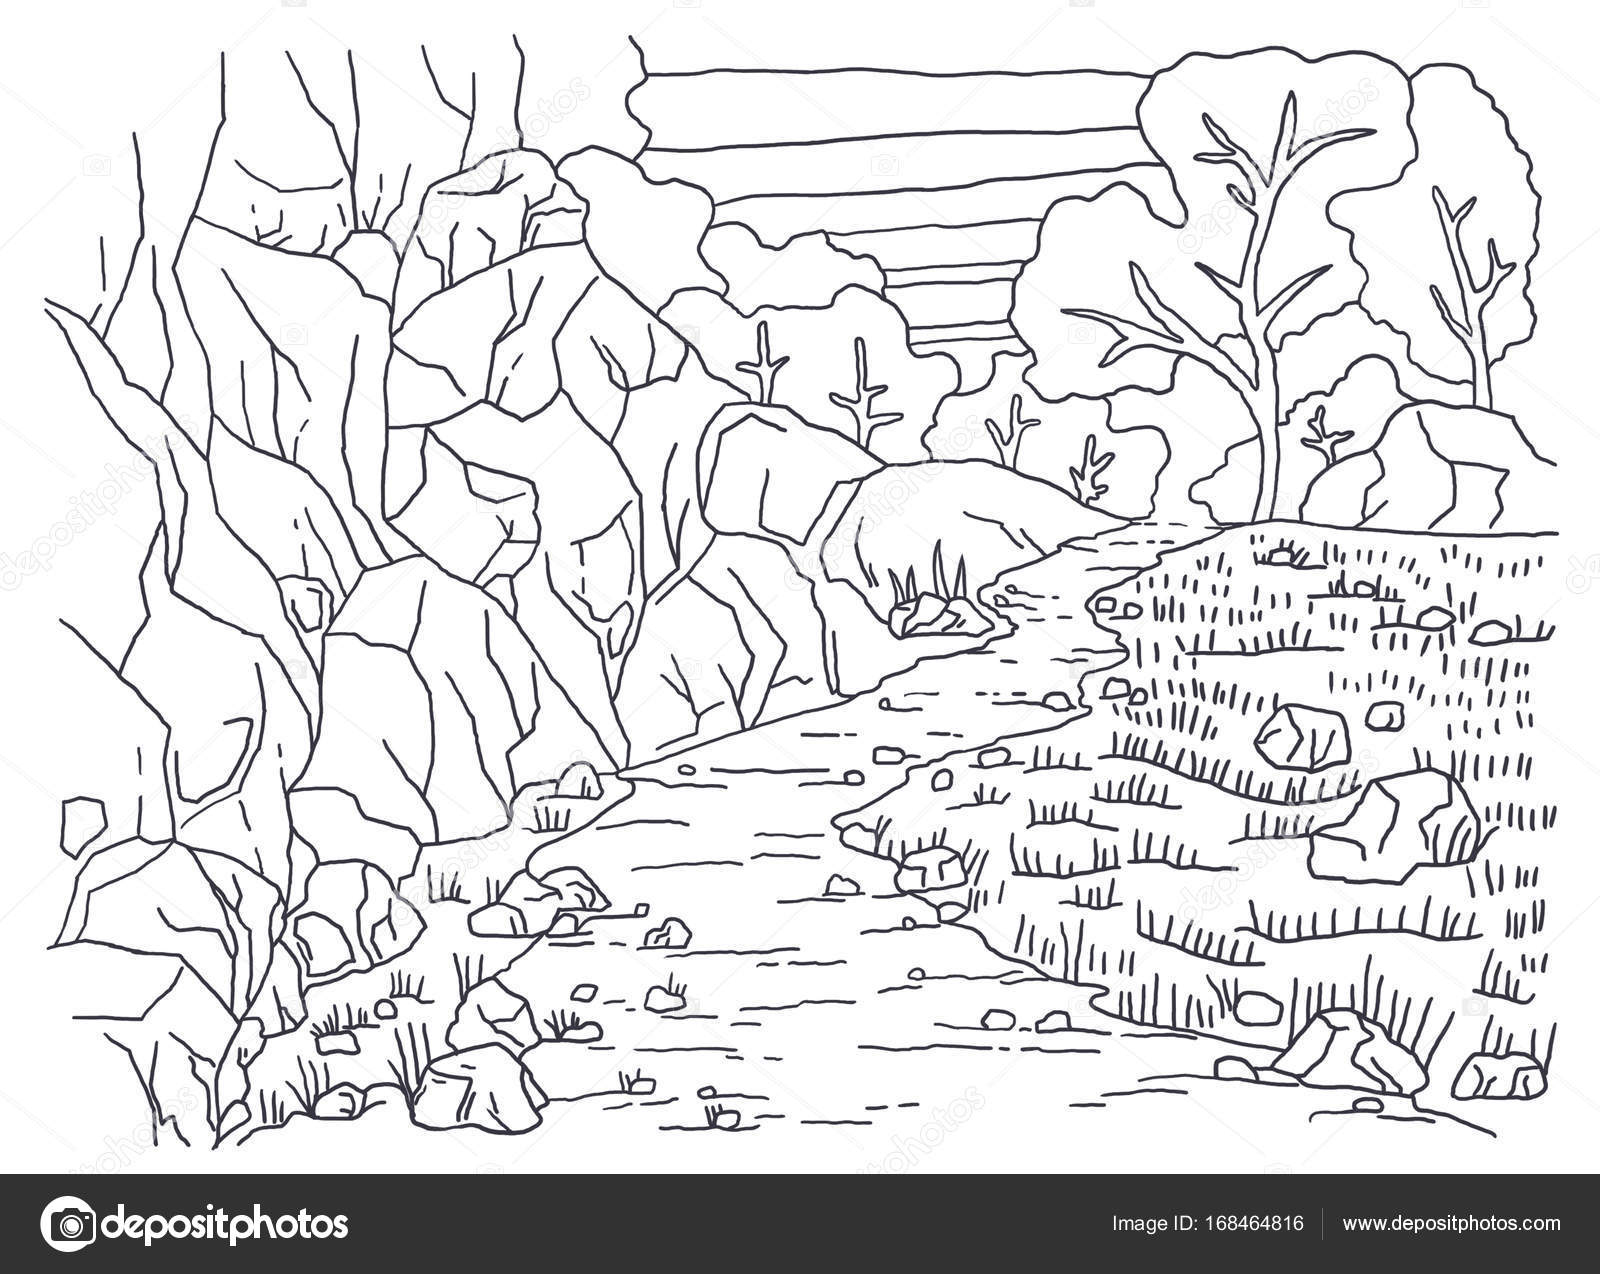 Foto in bianco e nero da colorare disegno grafica lineare Paesaggio Per la colorazione Un immagine della natura Montagna alberi piante erba